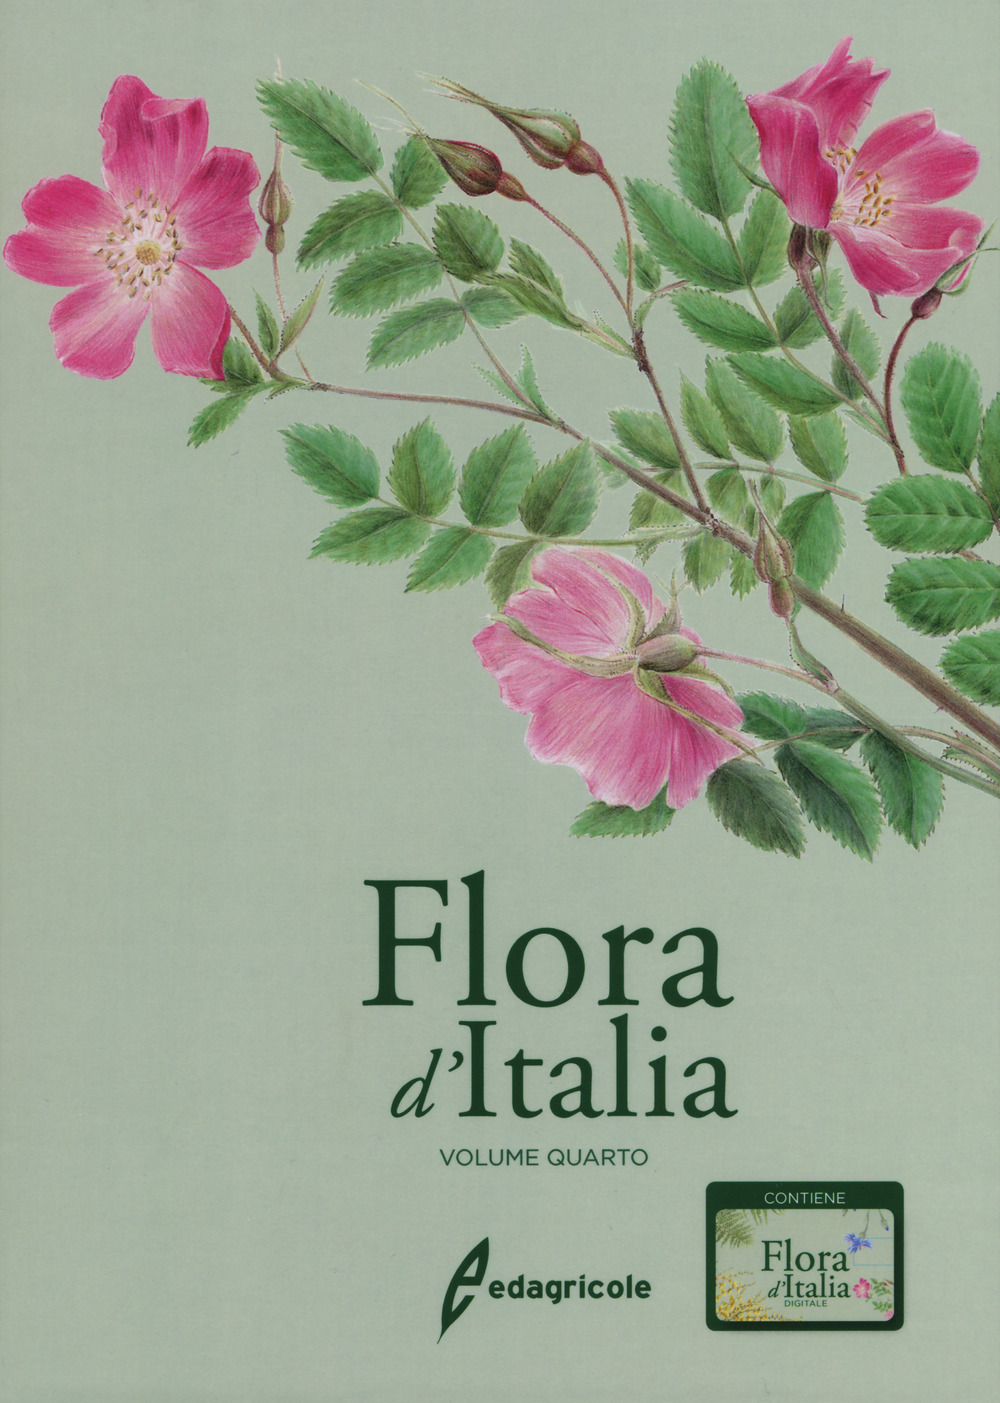 Libri Sandro Pignatti - Flora D'italia. Con USB Flash Drive Vol 04 NUOVO SIGILLATO, EDIZIONE DEL 11/04/2019 SUBITO DISPONIBILE